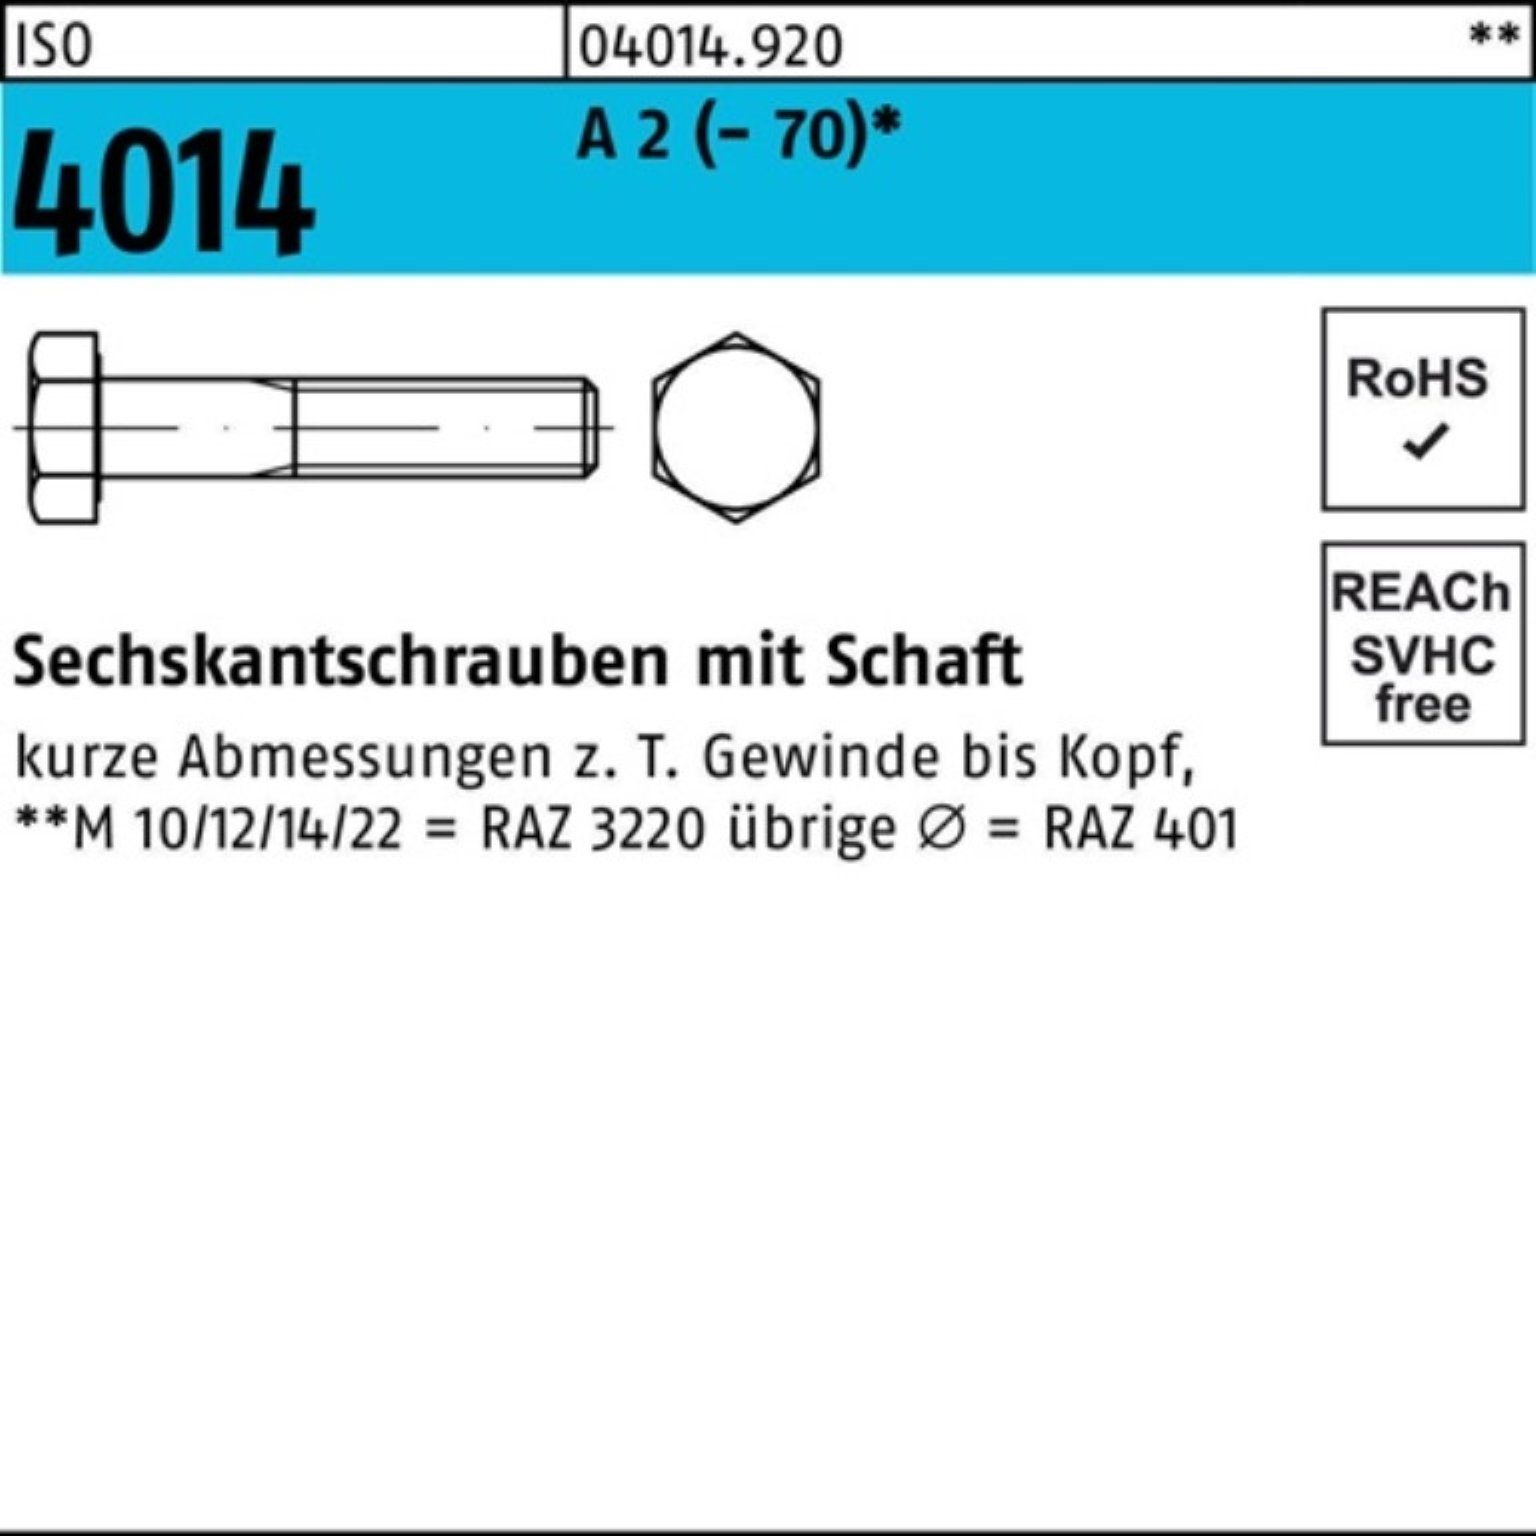 Bufab Sechskantschraube 100er Pack Sechskantschraube ISO 4014 Schaft M18x 130 A 2 (70) 25 St